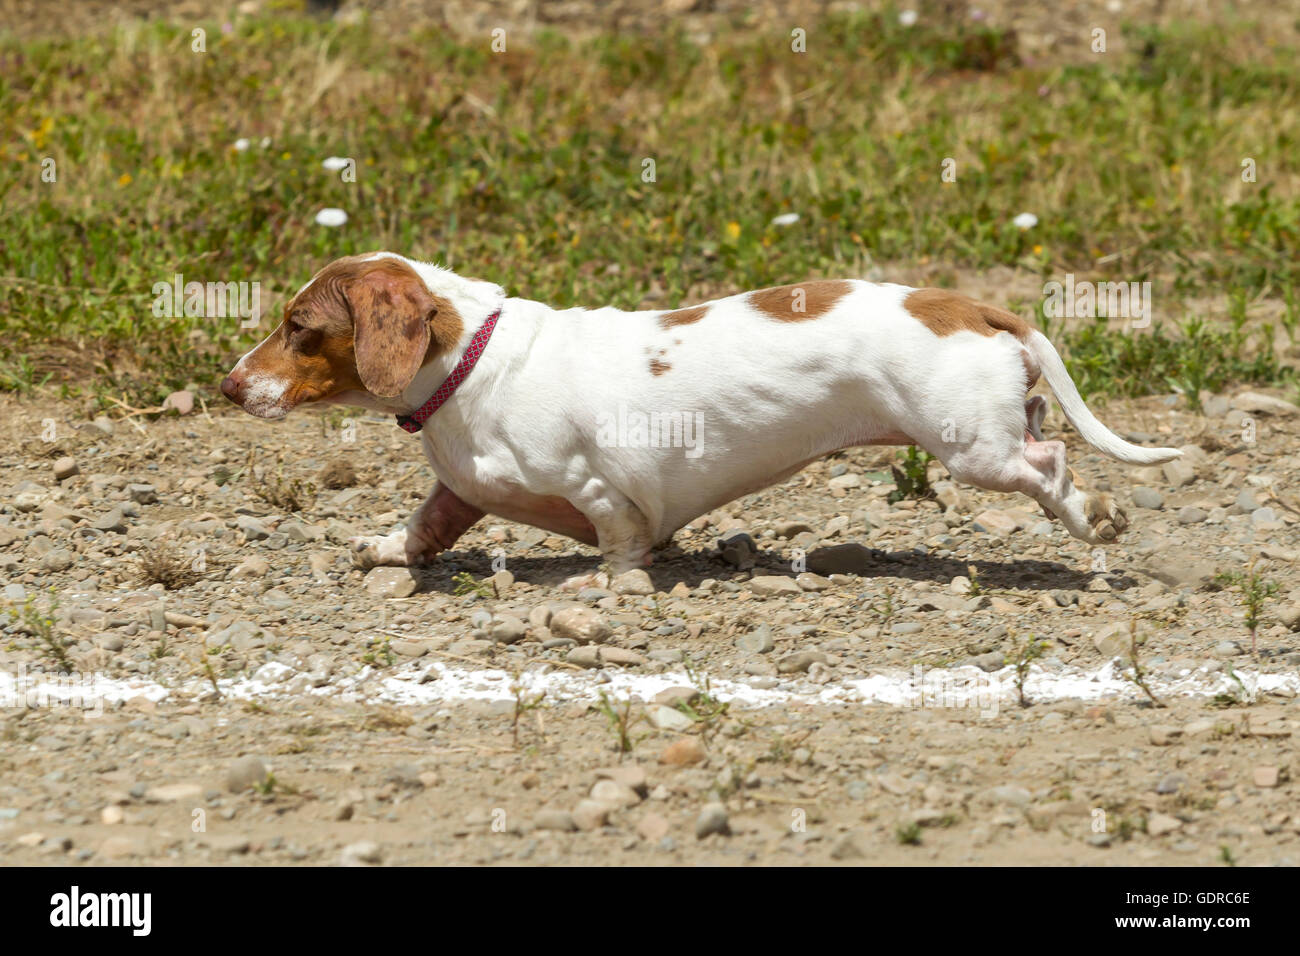 Short Dachsund in wiener dog race. Stock Photo